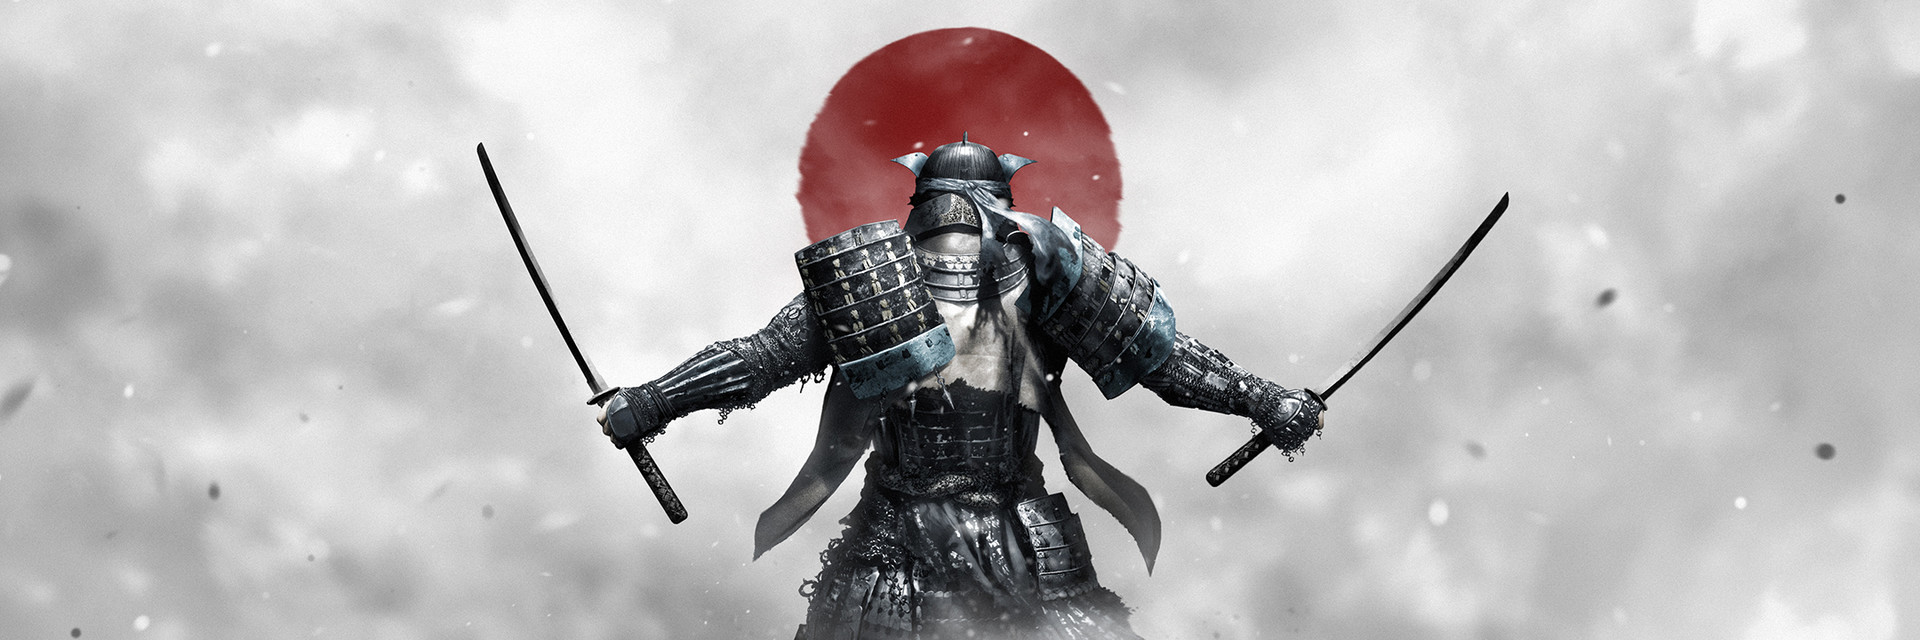 Samurai - War Tribe Gear